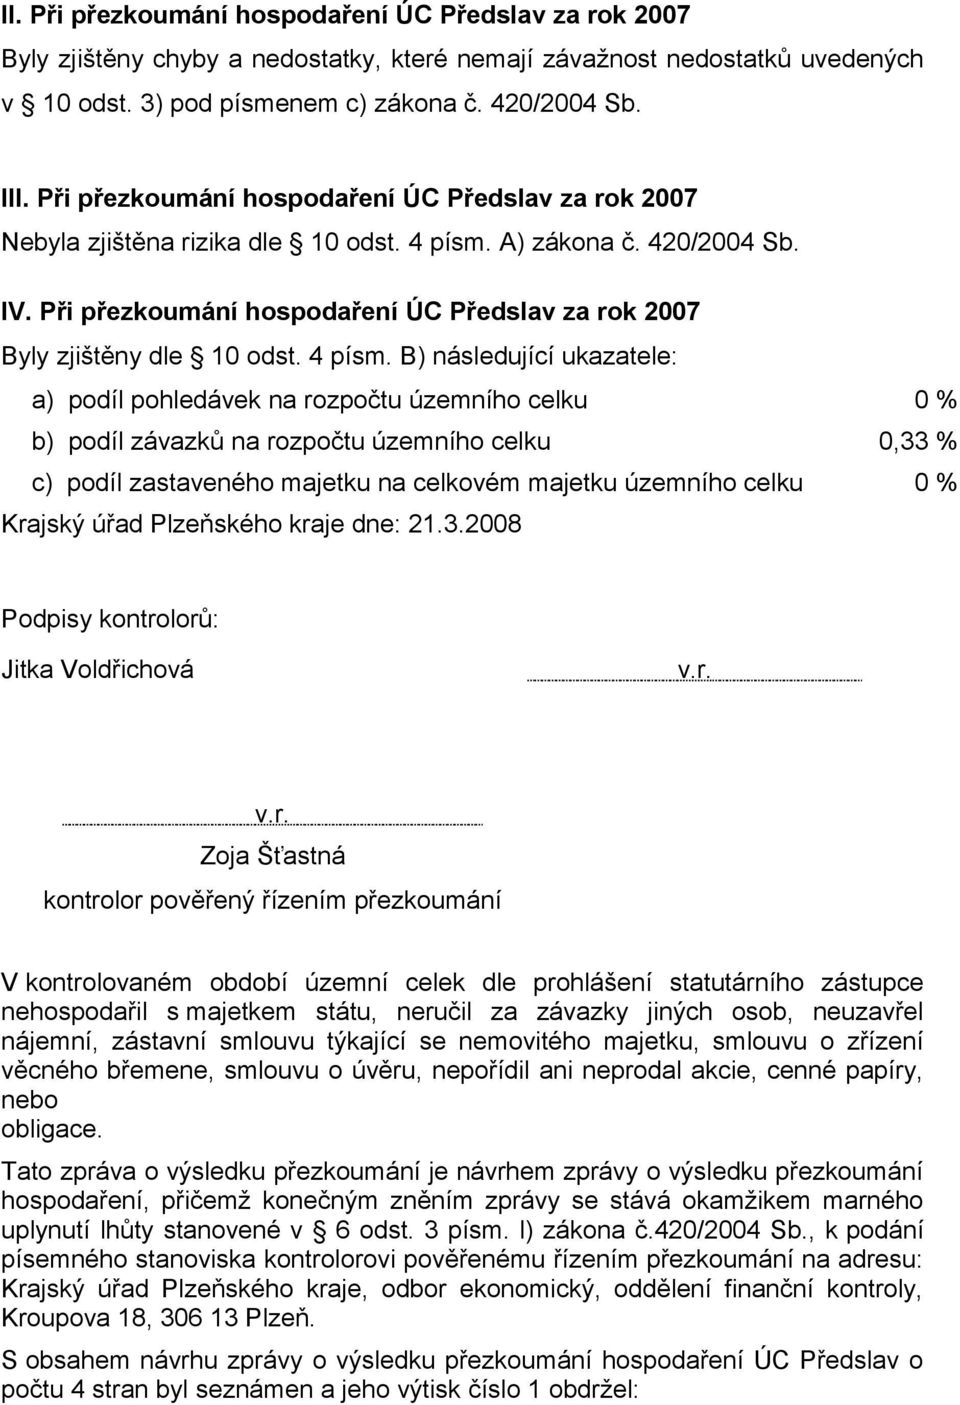 Při přezkoumání hospodaření ÚC Předslav za rok 2007 Byly zjištěny dle 10 odst. 4 písm.